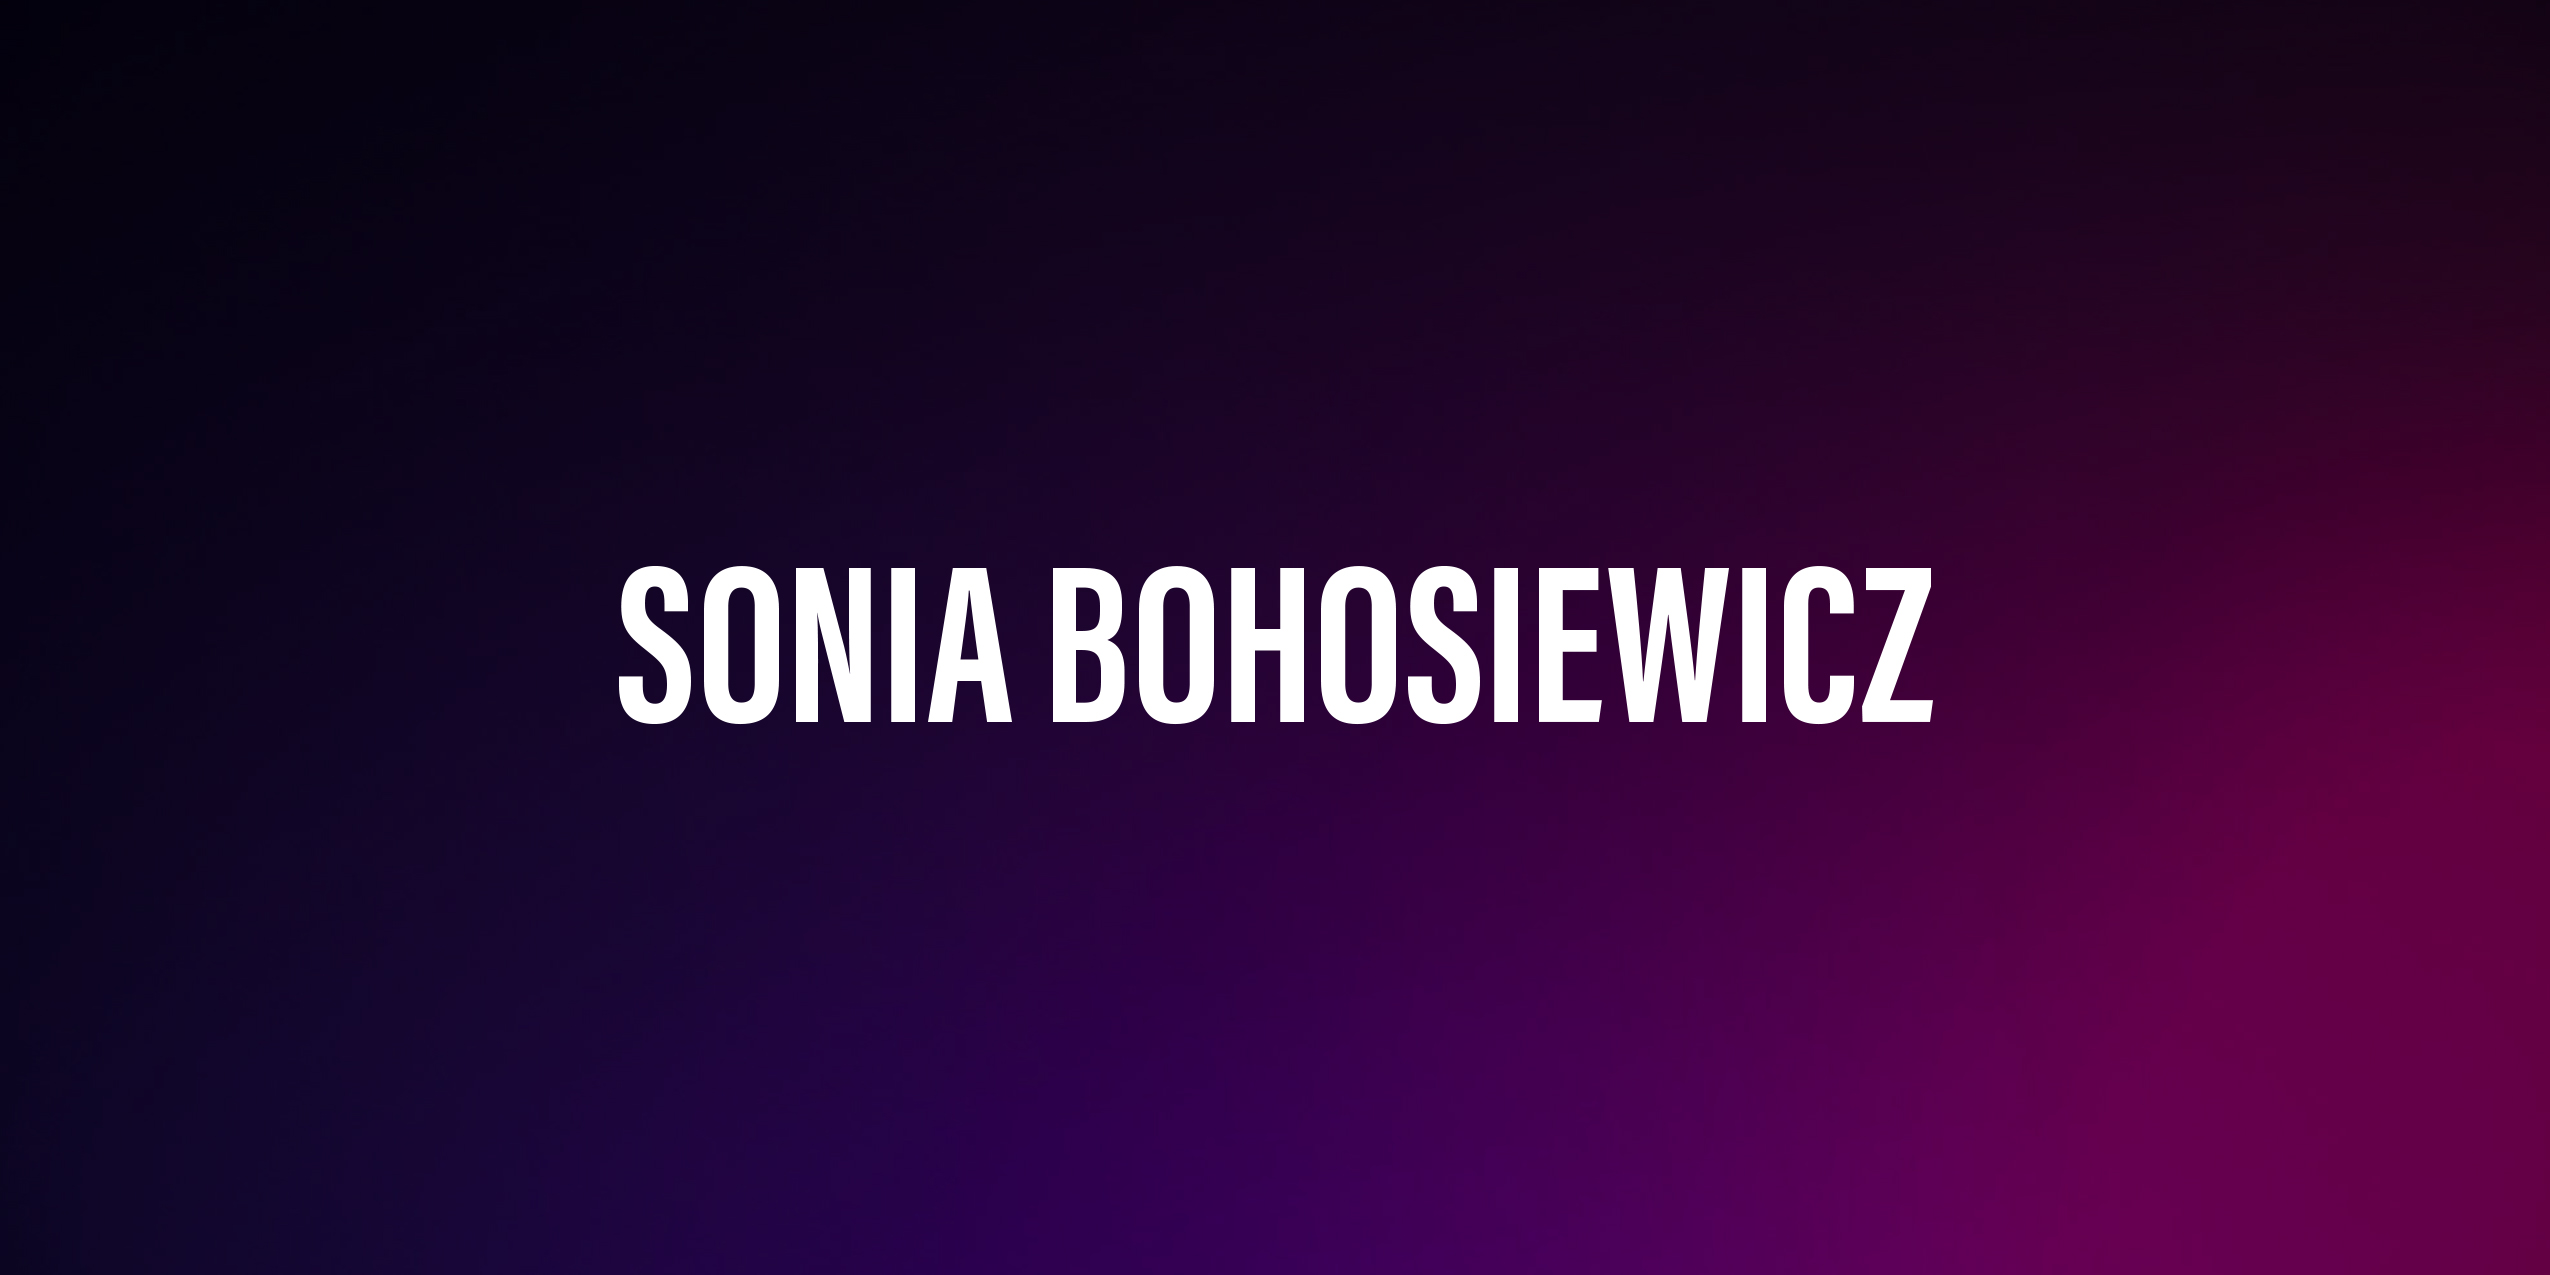 Sonia Bohosiewicz – życiorys i filmografia